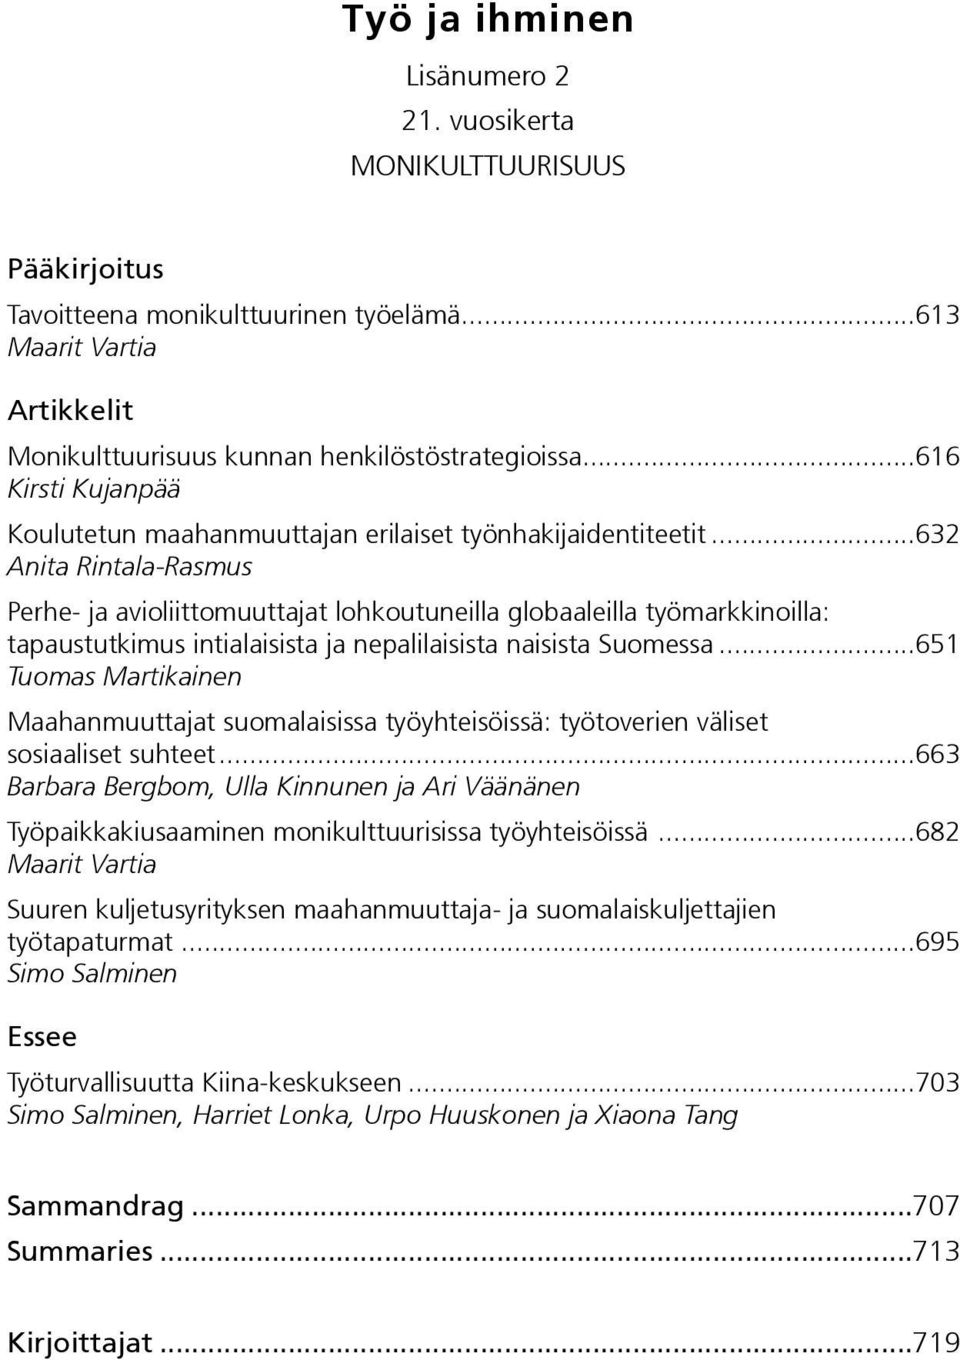 ..632 Anita Rintala-Rasmus Perhe- ja avioliittomuuttajat lohkoutuneilla globaaleilla työmarkkinoilla: tapaustutkimus intialaisista ja nepalilaisista naisista Suomessa.